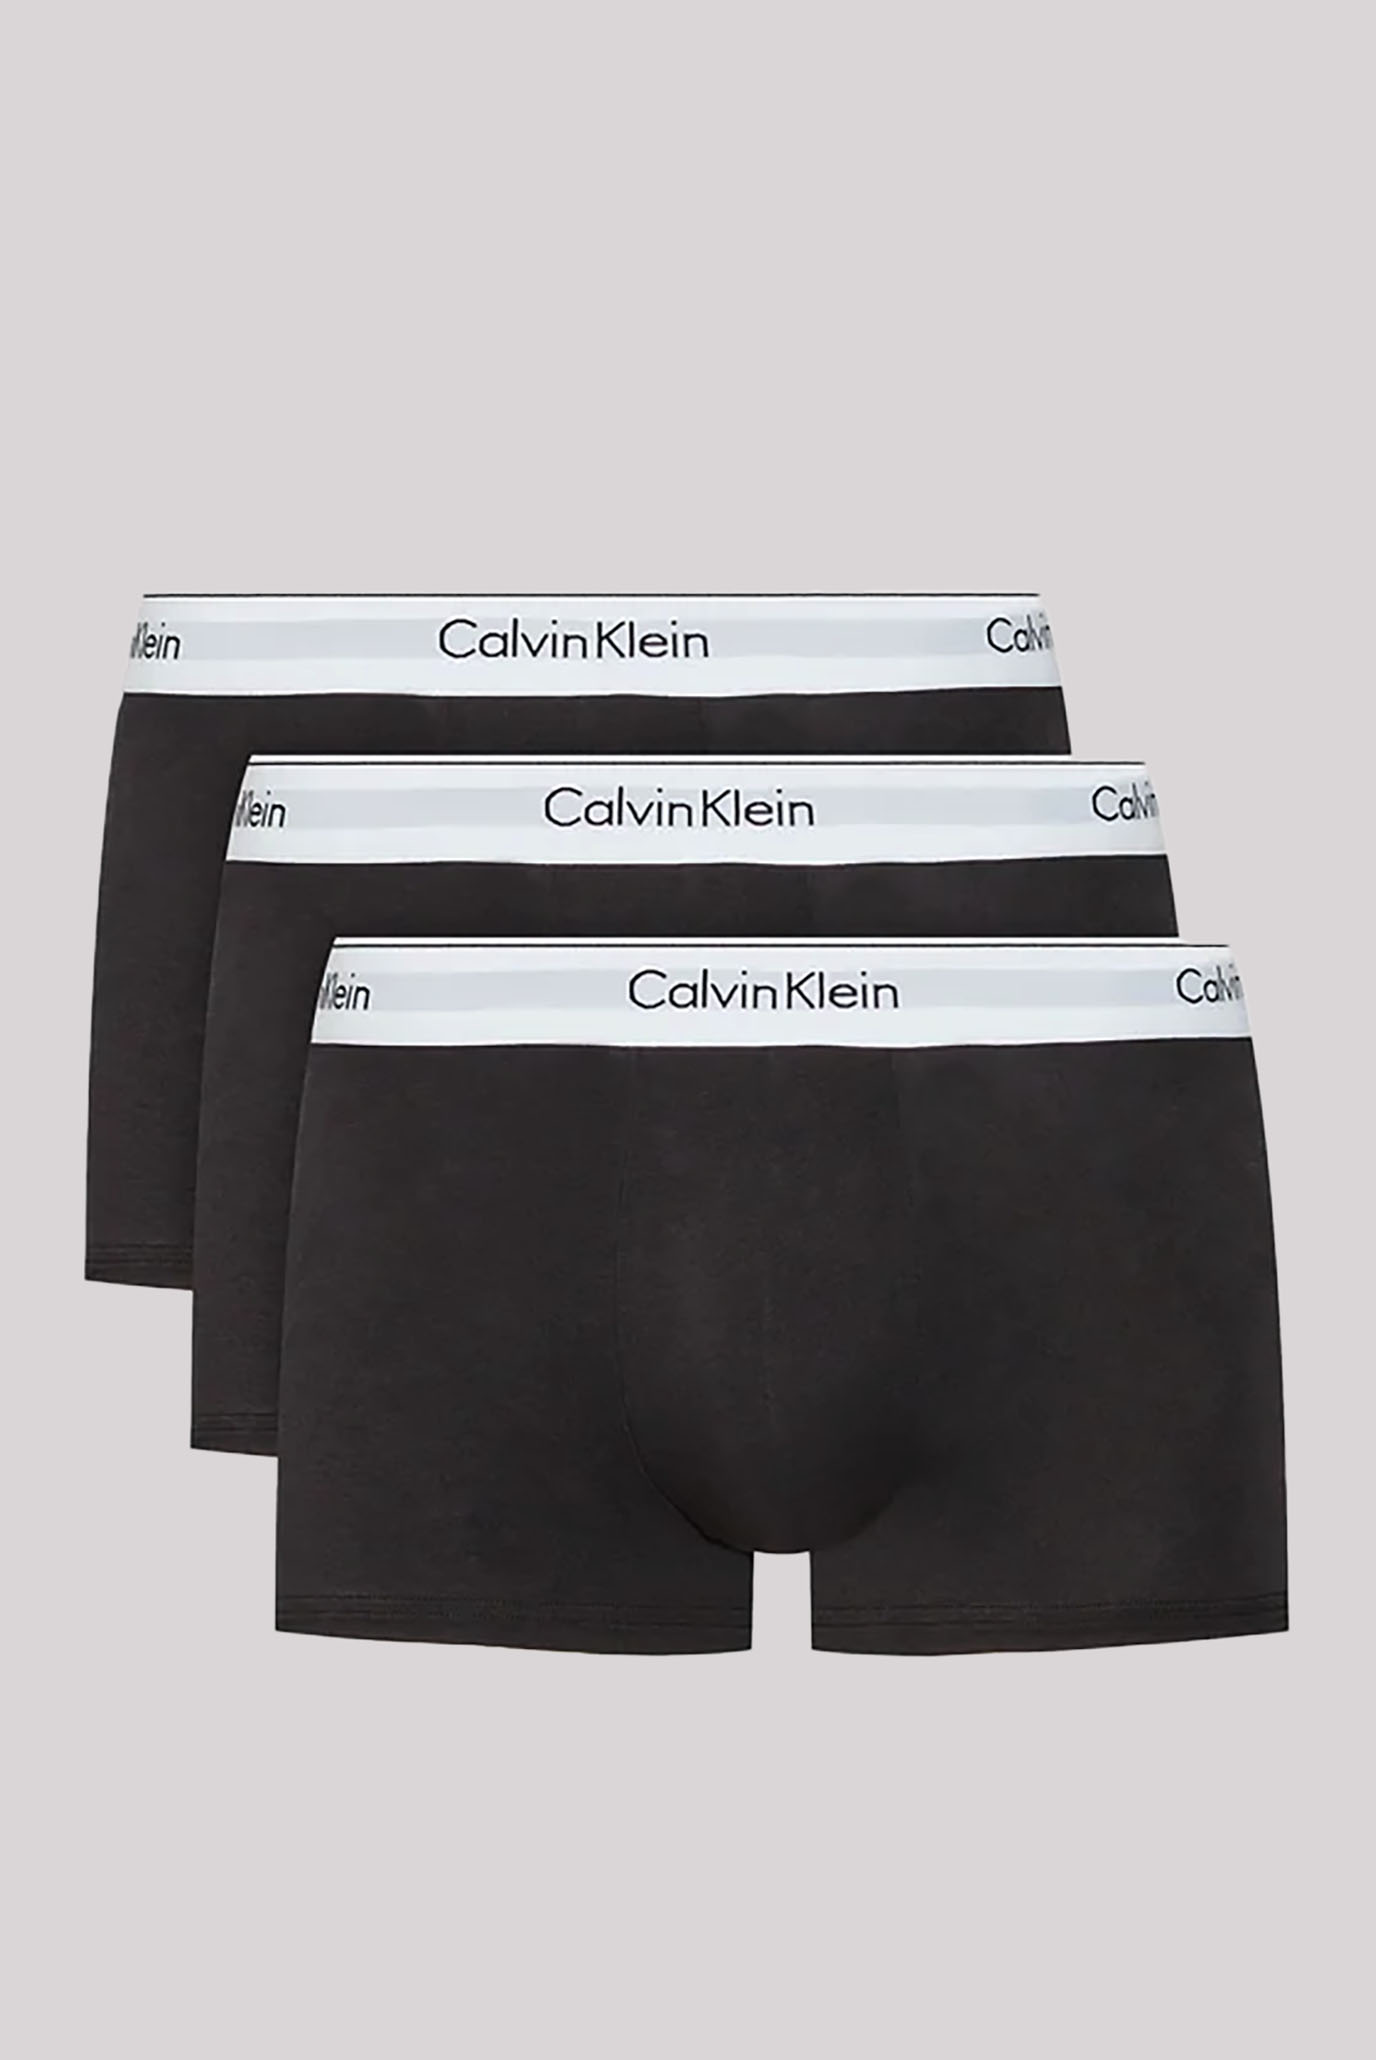 Calvin Klein Boxers, Underwear, CK, Trunks